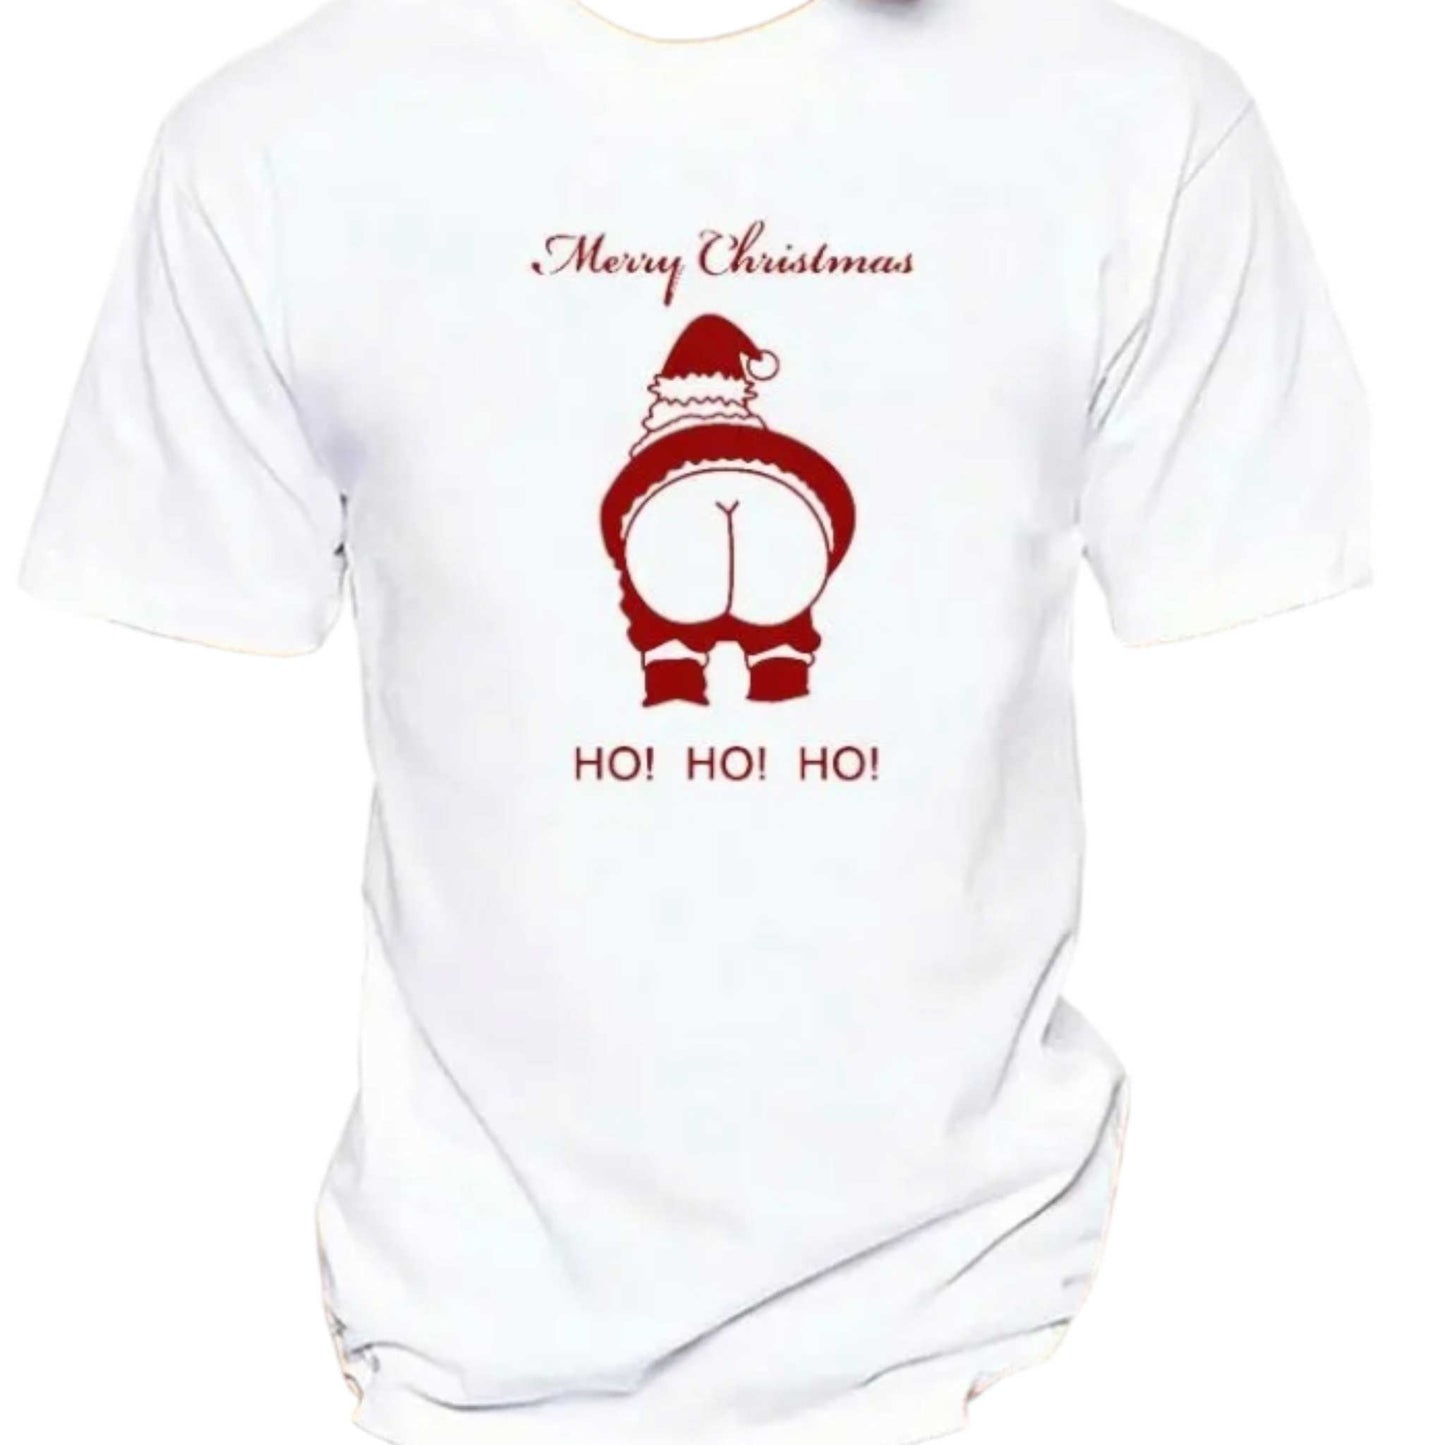 Tricou de Craciun, amuzant cu text funny " HO HO HO", alb, 100% bumbac.